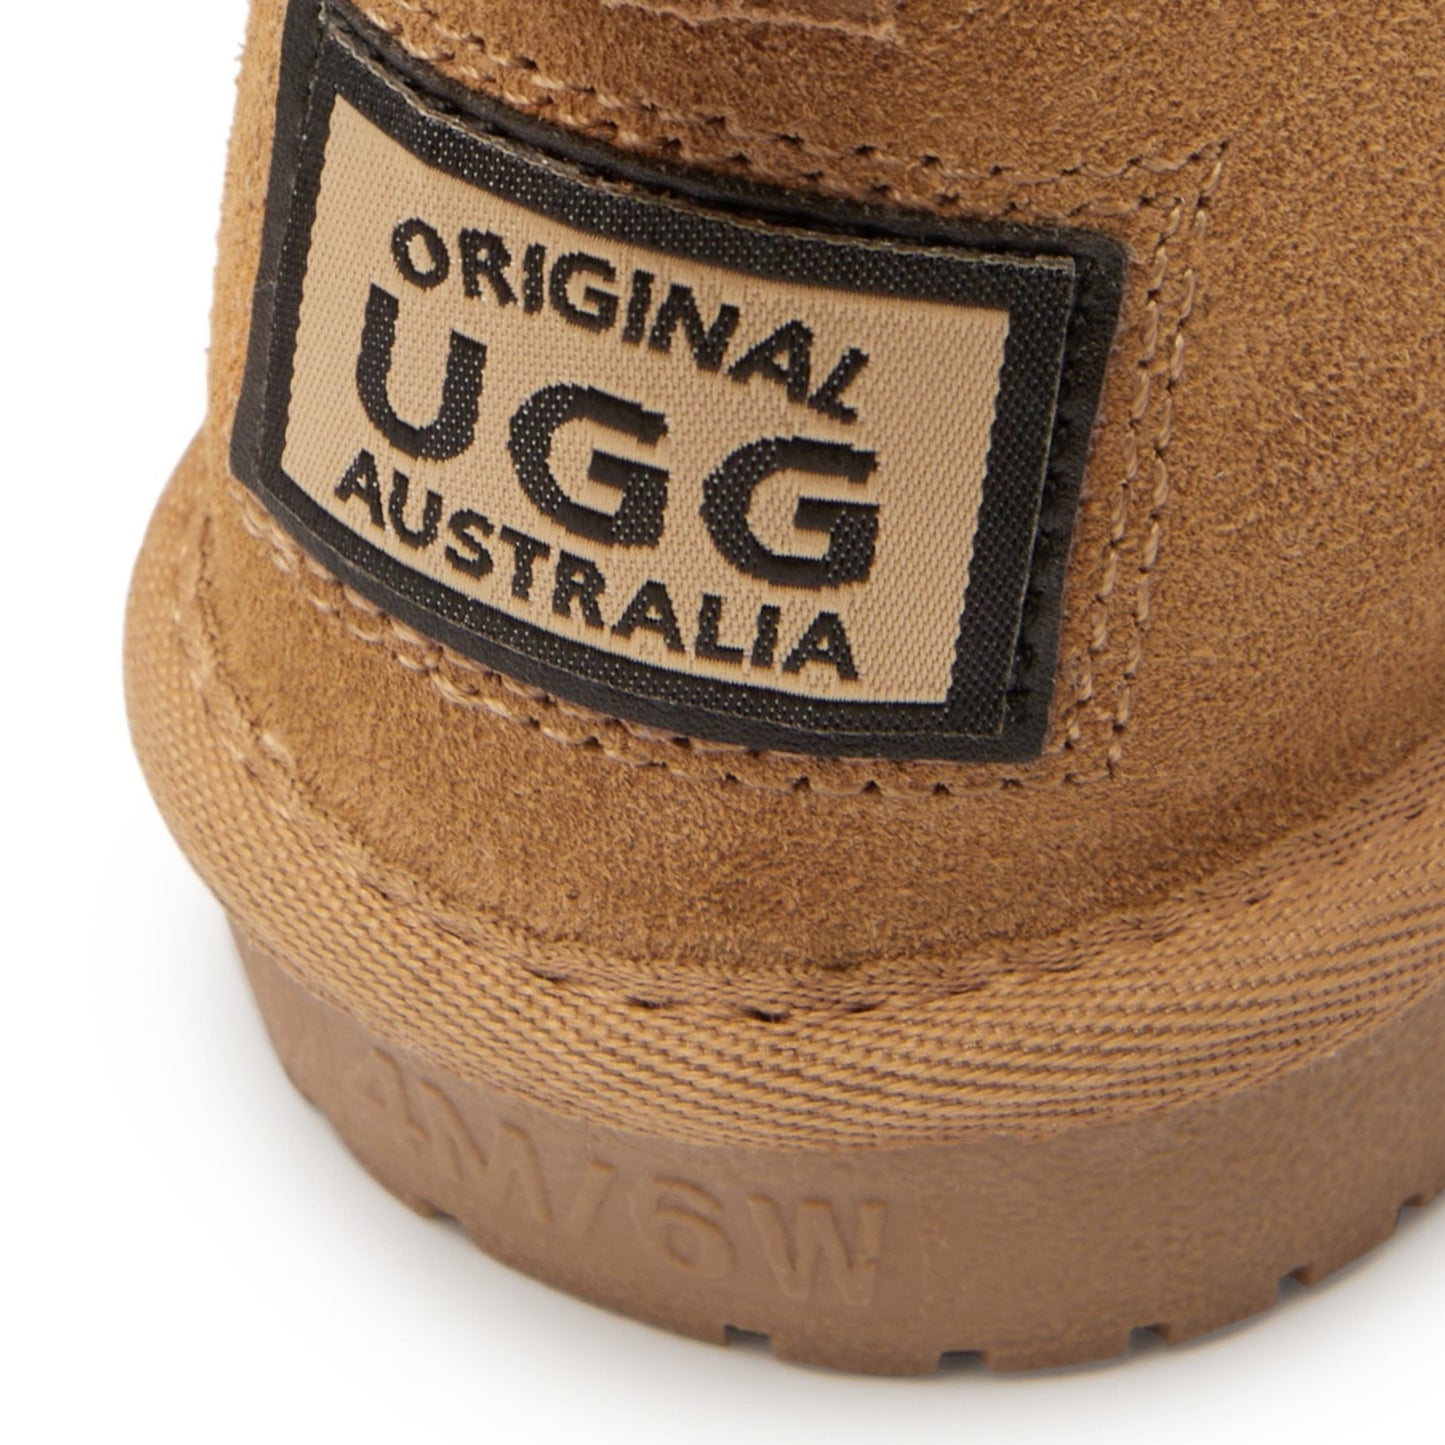 Original Ugg Australia Mini Sheepskin Boot Chestnut